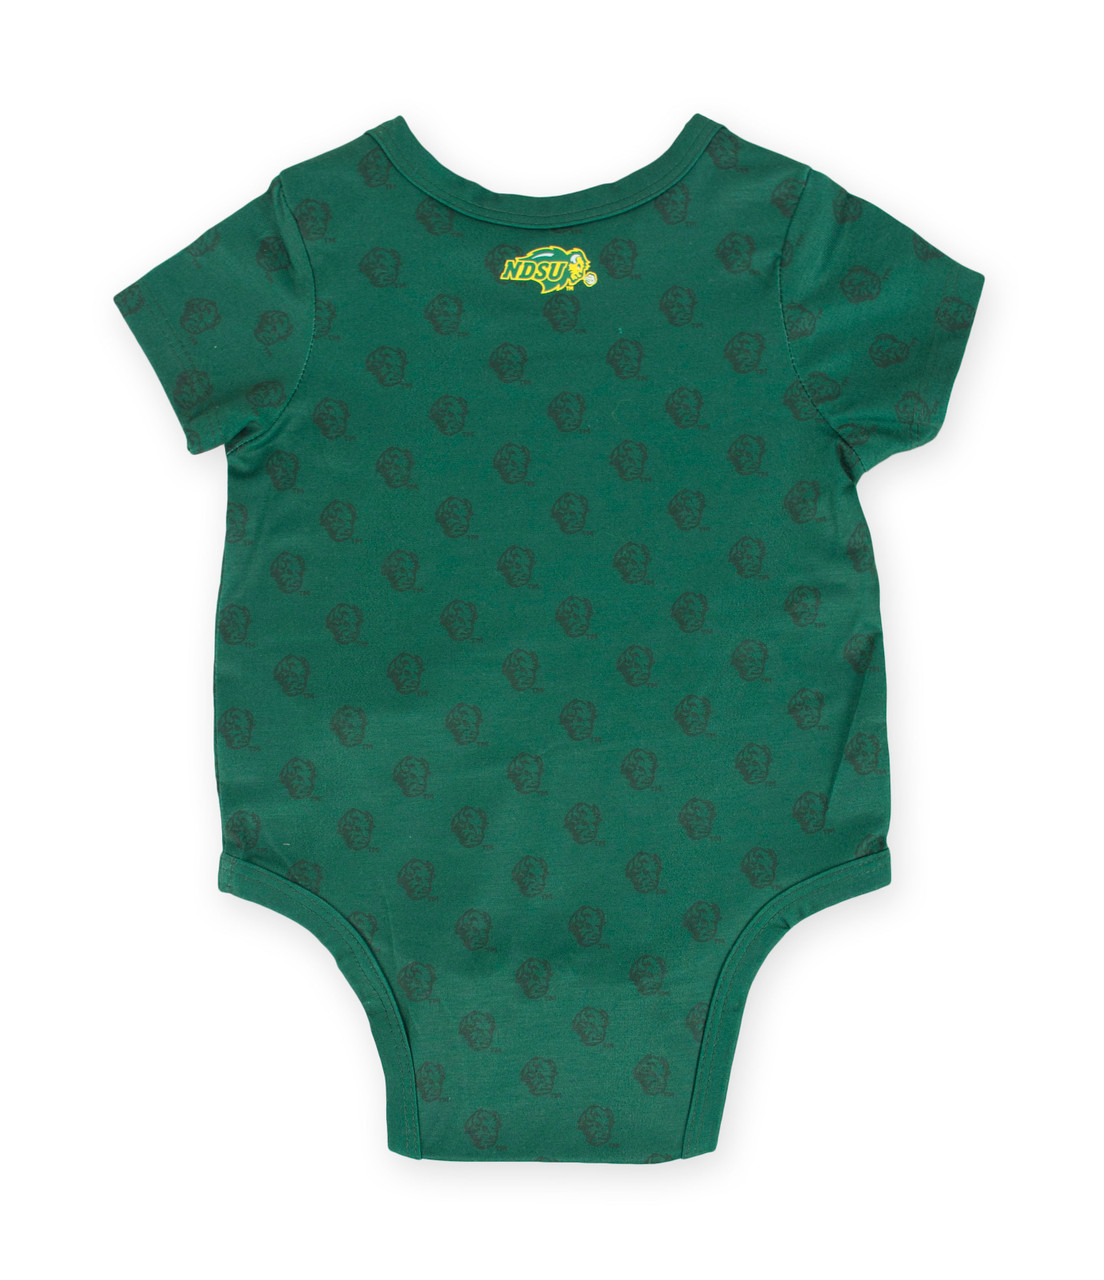 Polyester Infant Bodysuit Green